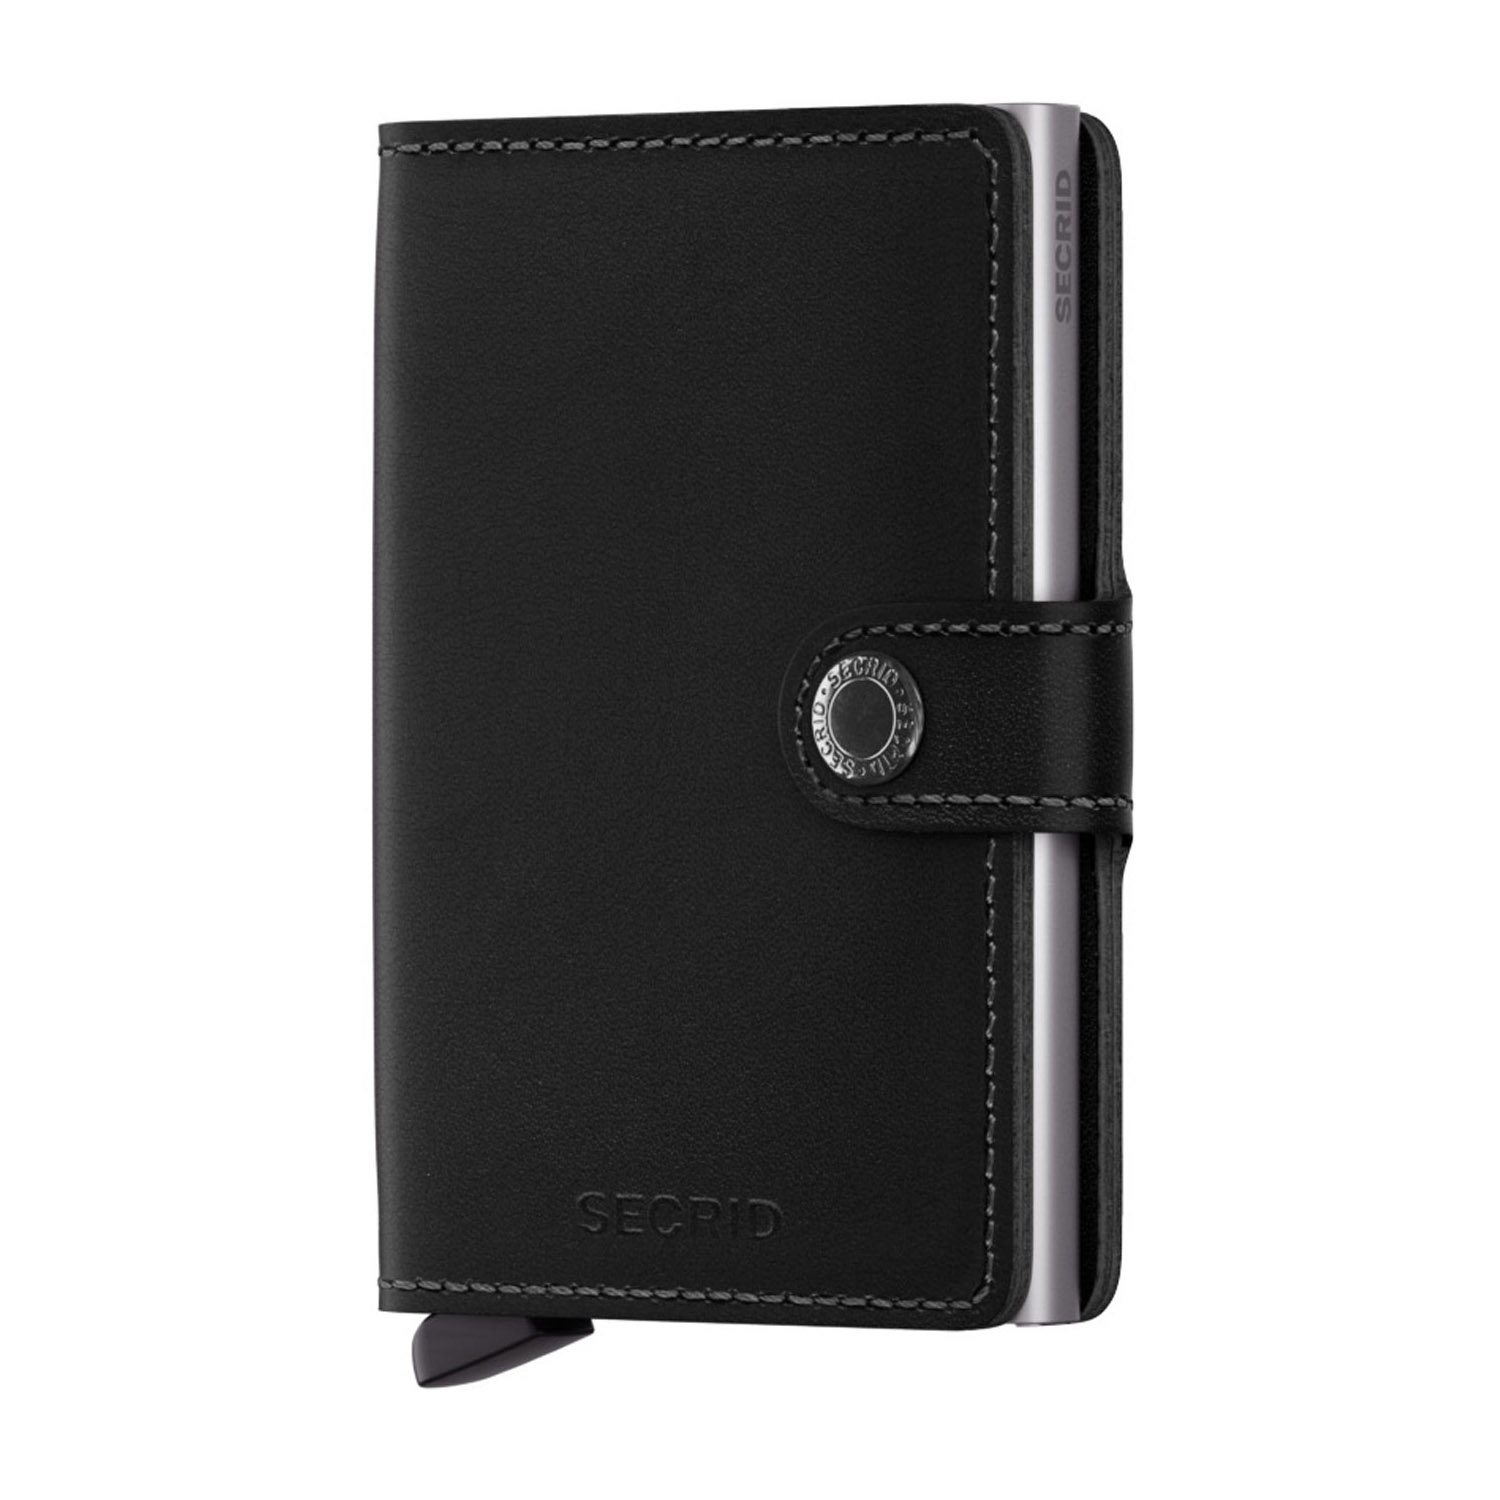 Photos - Wallet Secrid Black Leather Miniwallet